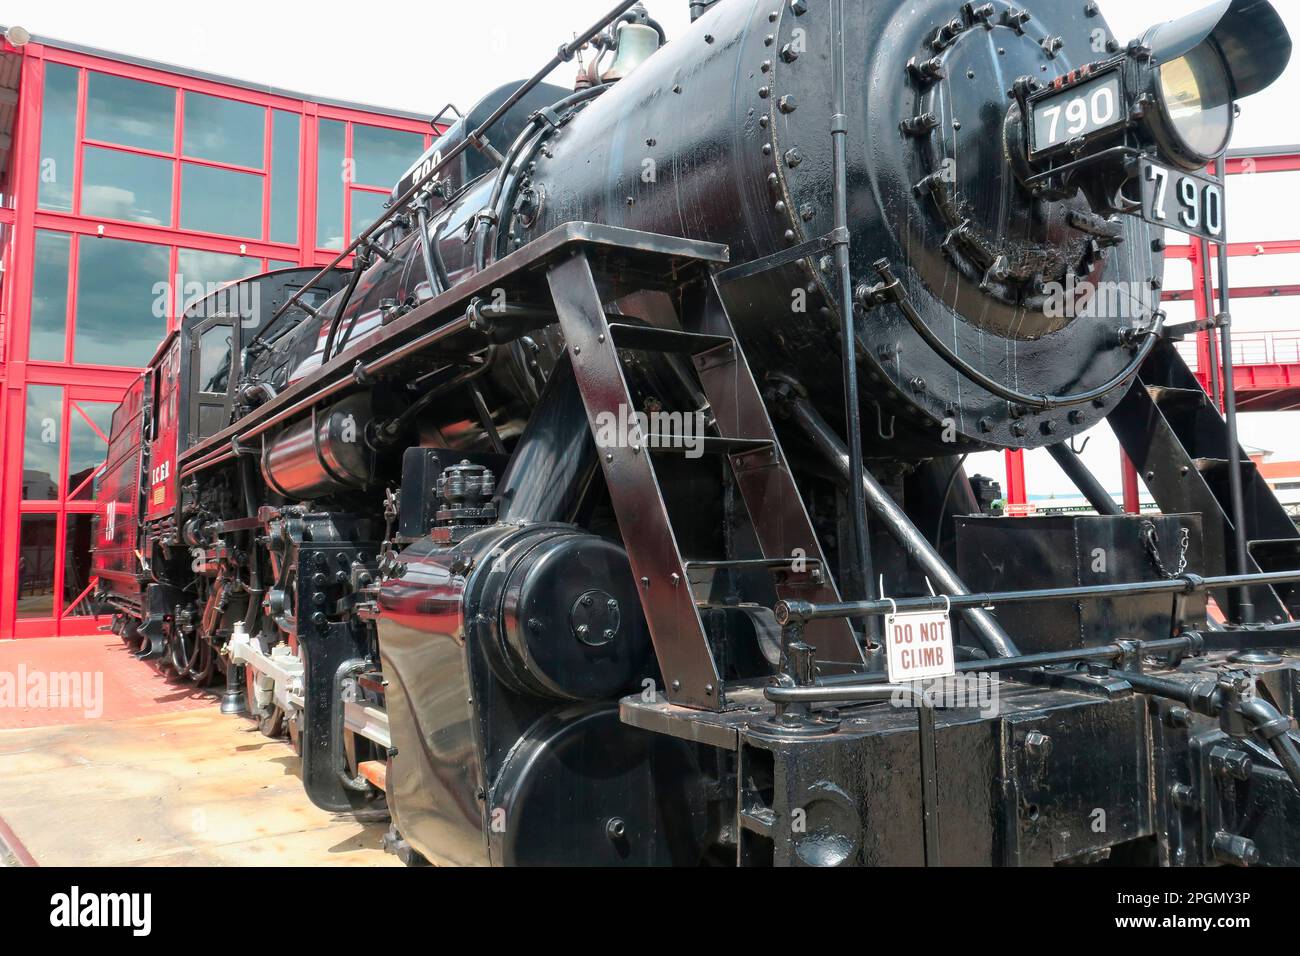 Scena della locomotiva a vapore restaurata presso il sito storico nazionale di Steamtown a Scranton, Pennsylvania Foto Stock